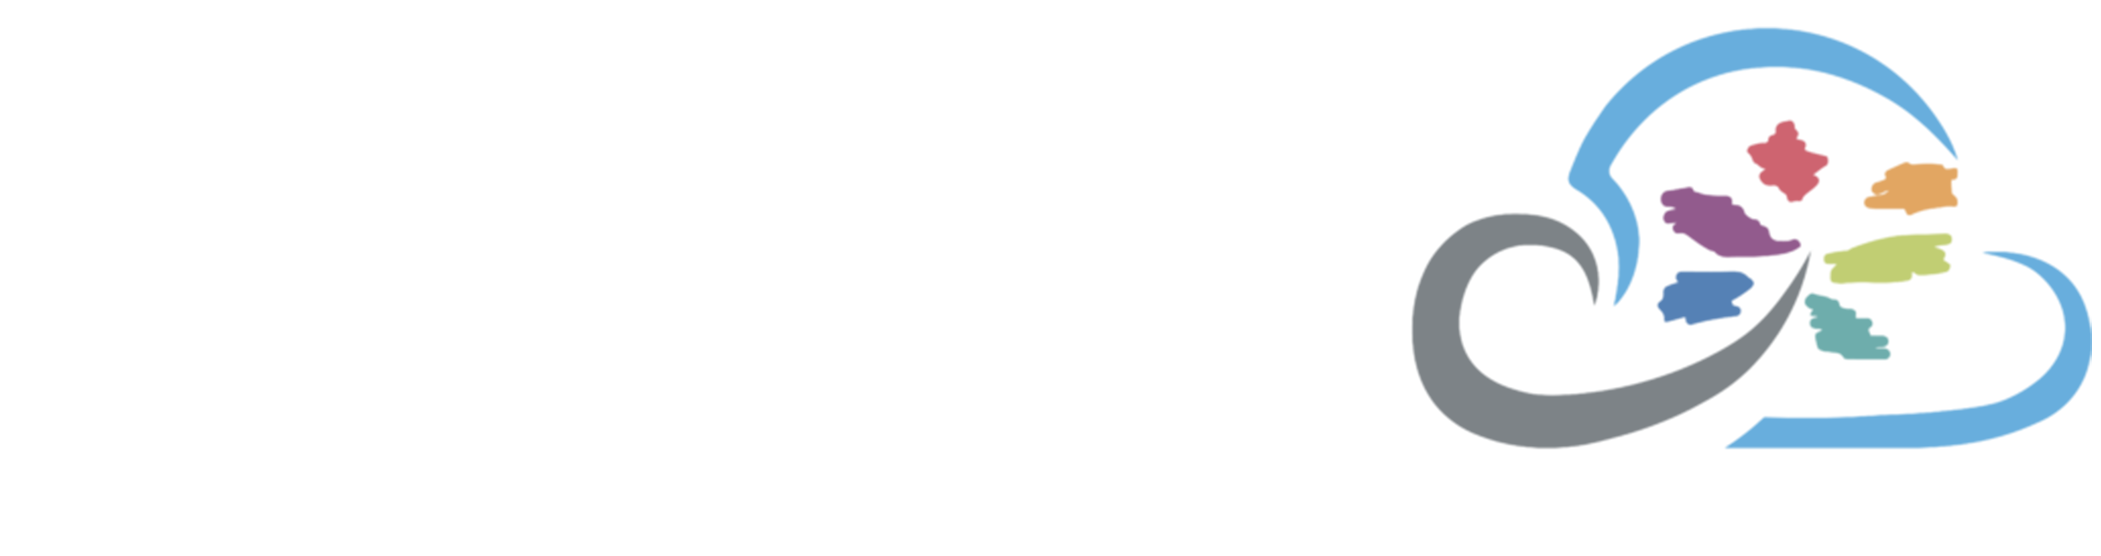 InfoTelecom Cloud